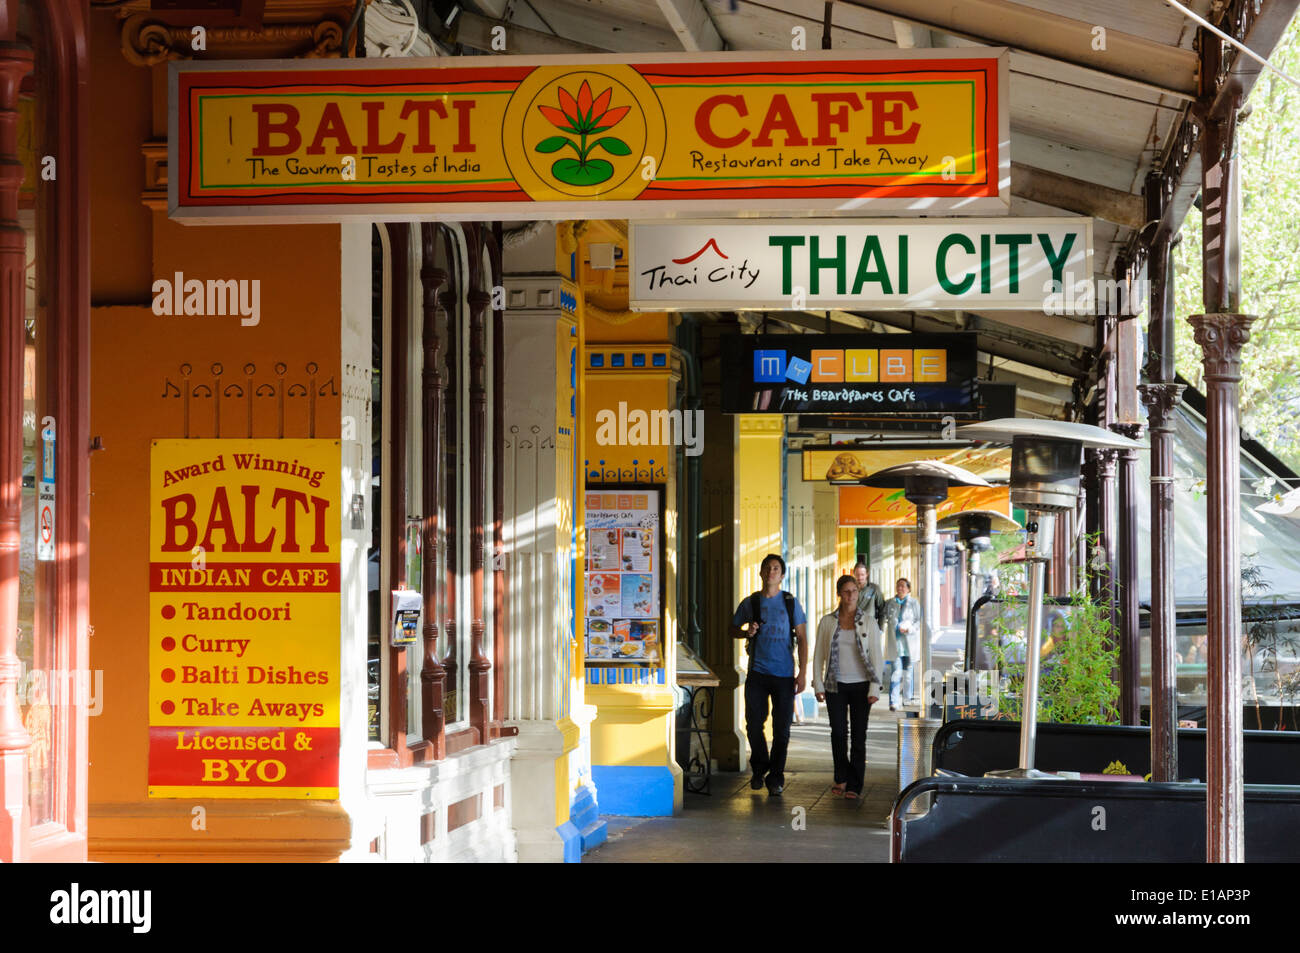 Restaurantes étnicos de distintos tipos, incluyendo Balti indias y tailandesas. La famosa calle Lygon Street, Melbourne. Foto de stock